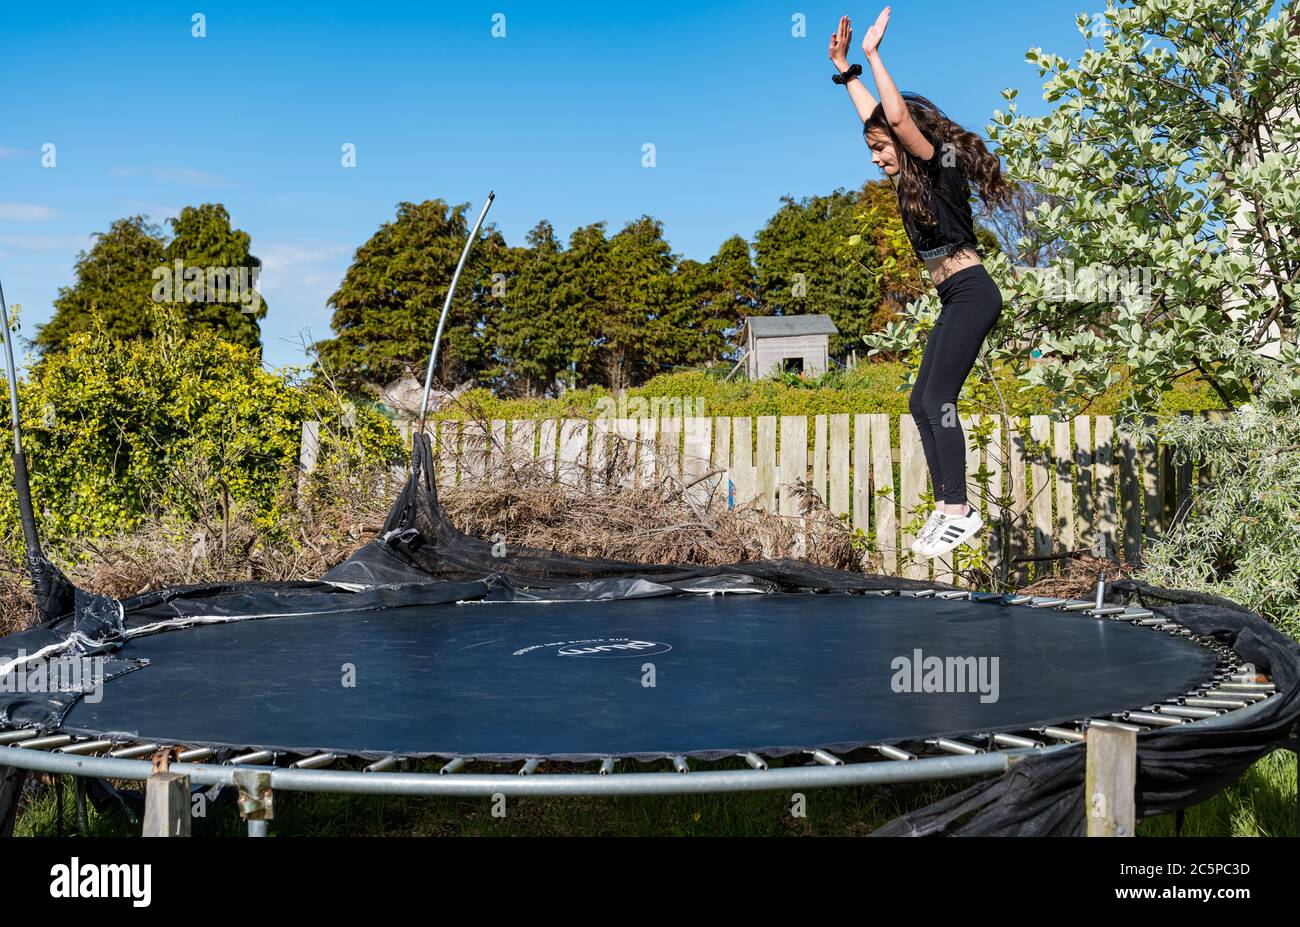 Fille de 11 ans sautant sur trampoline dans un jardin ensoleillé, East Lothian, Écosse, Royaume-Uni Banque D'Images